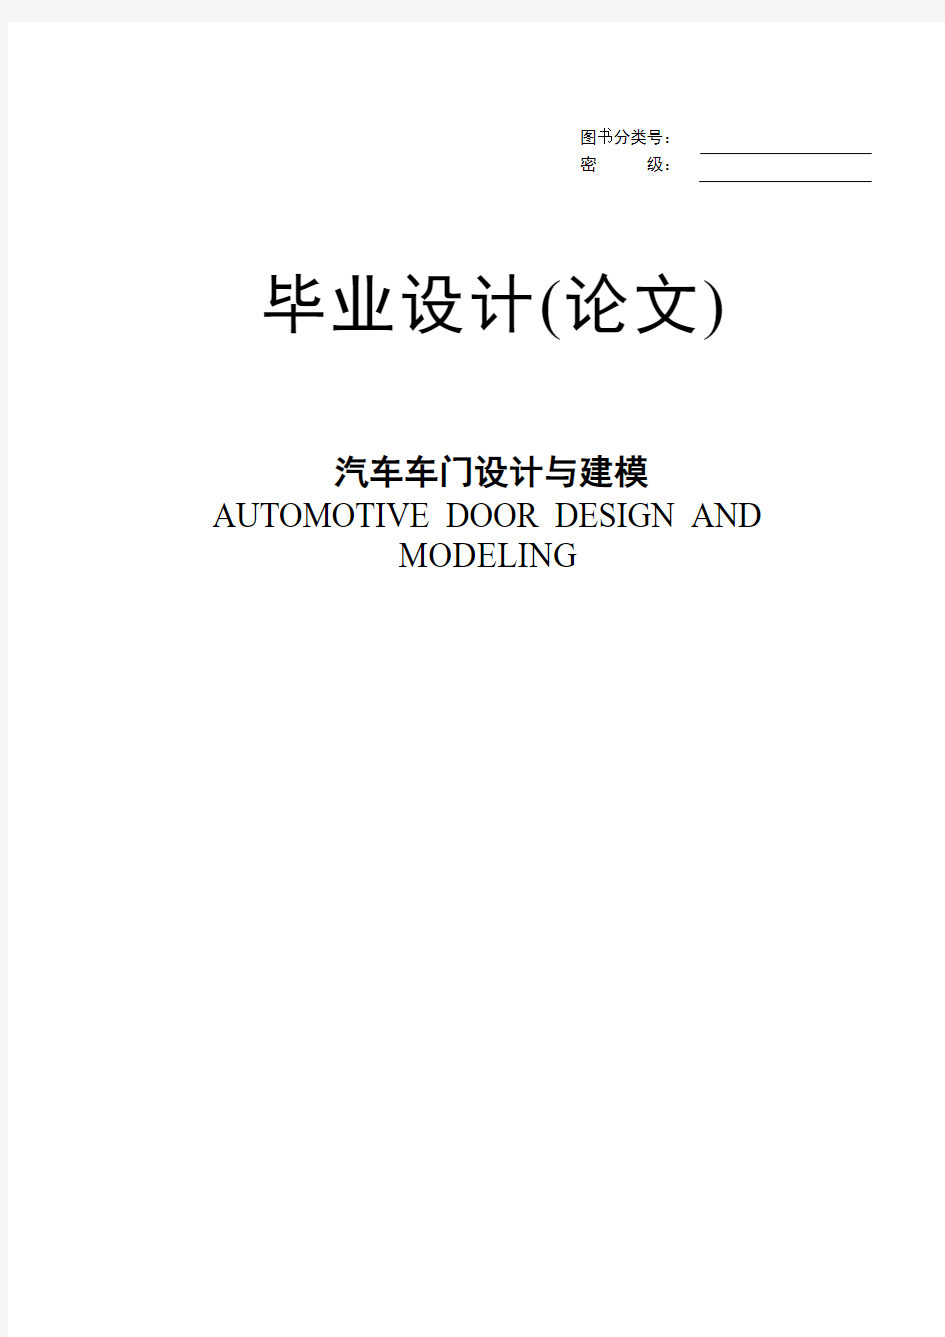 汽车车门设计与建模本科毕业设计(论文)